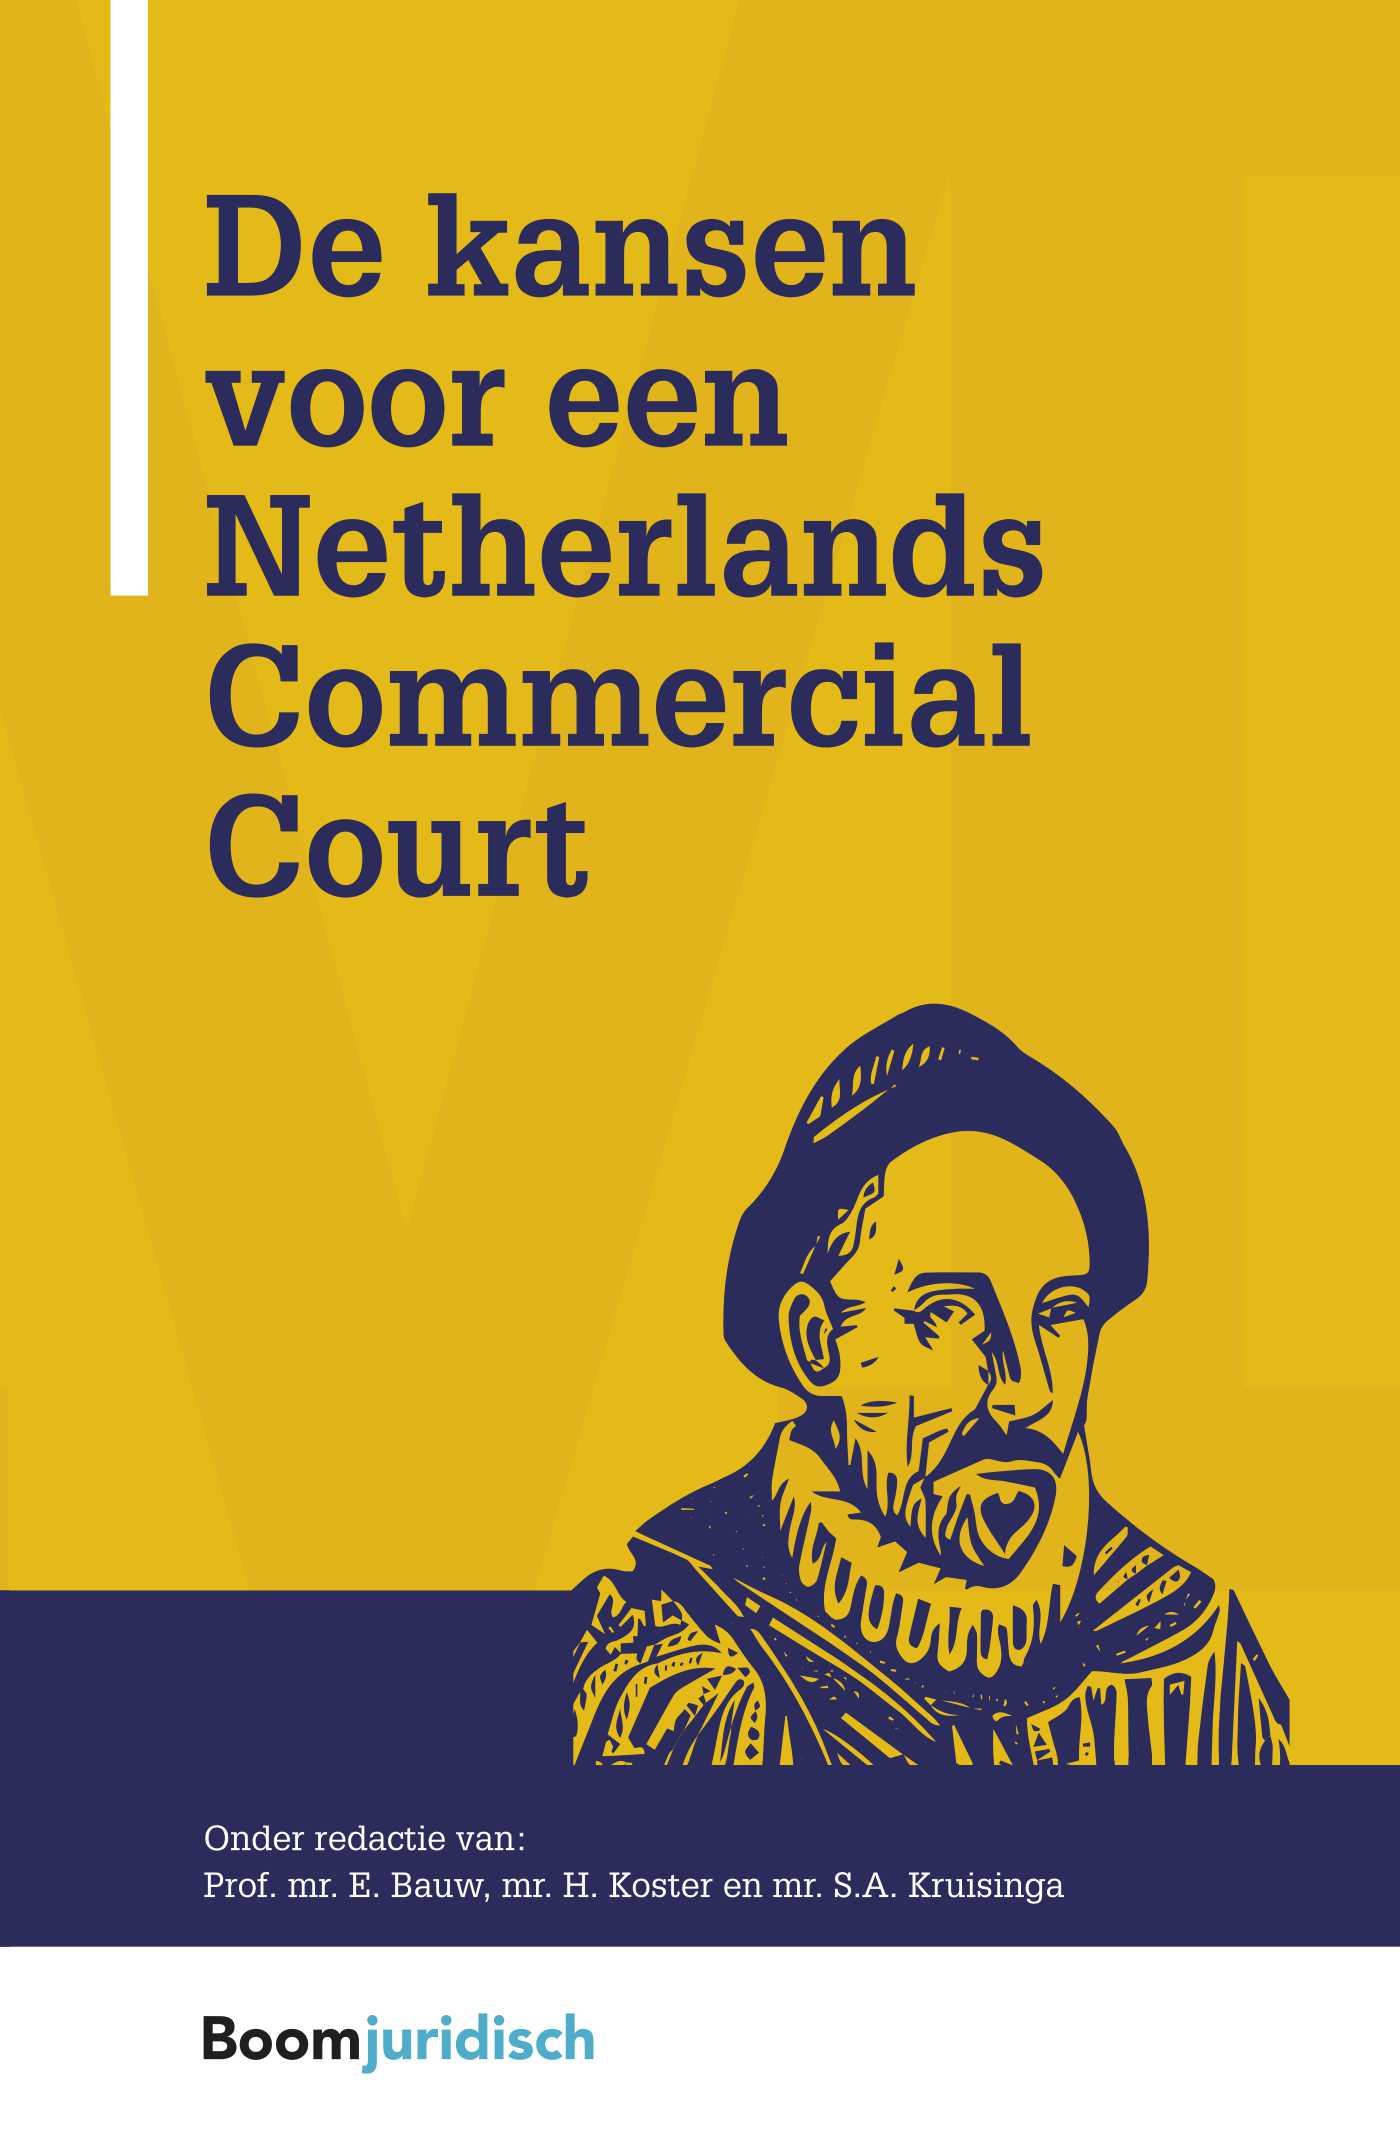 De kansen voor een Netherlands Commercial Court (Ebook)